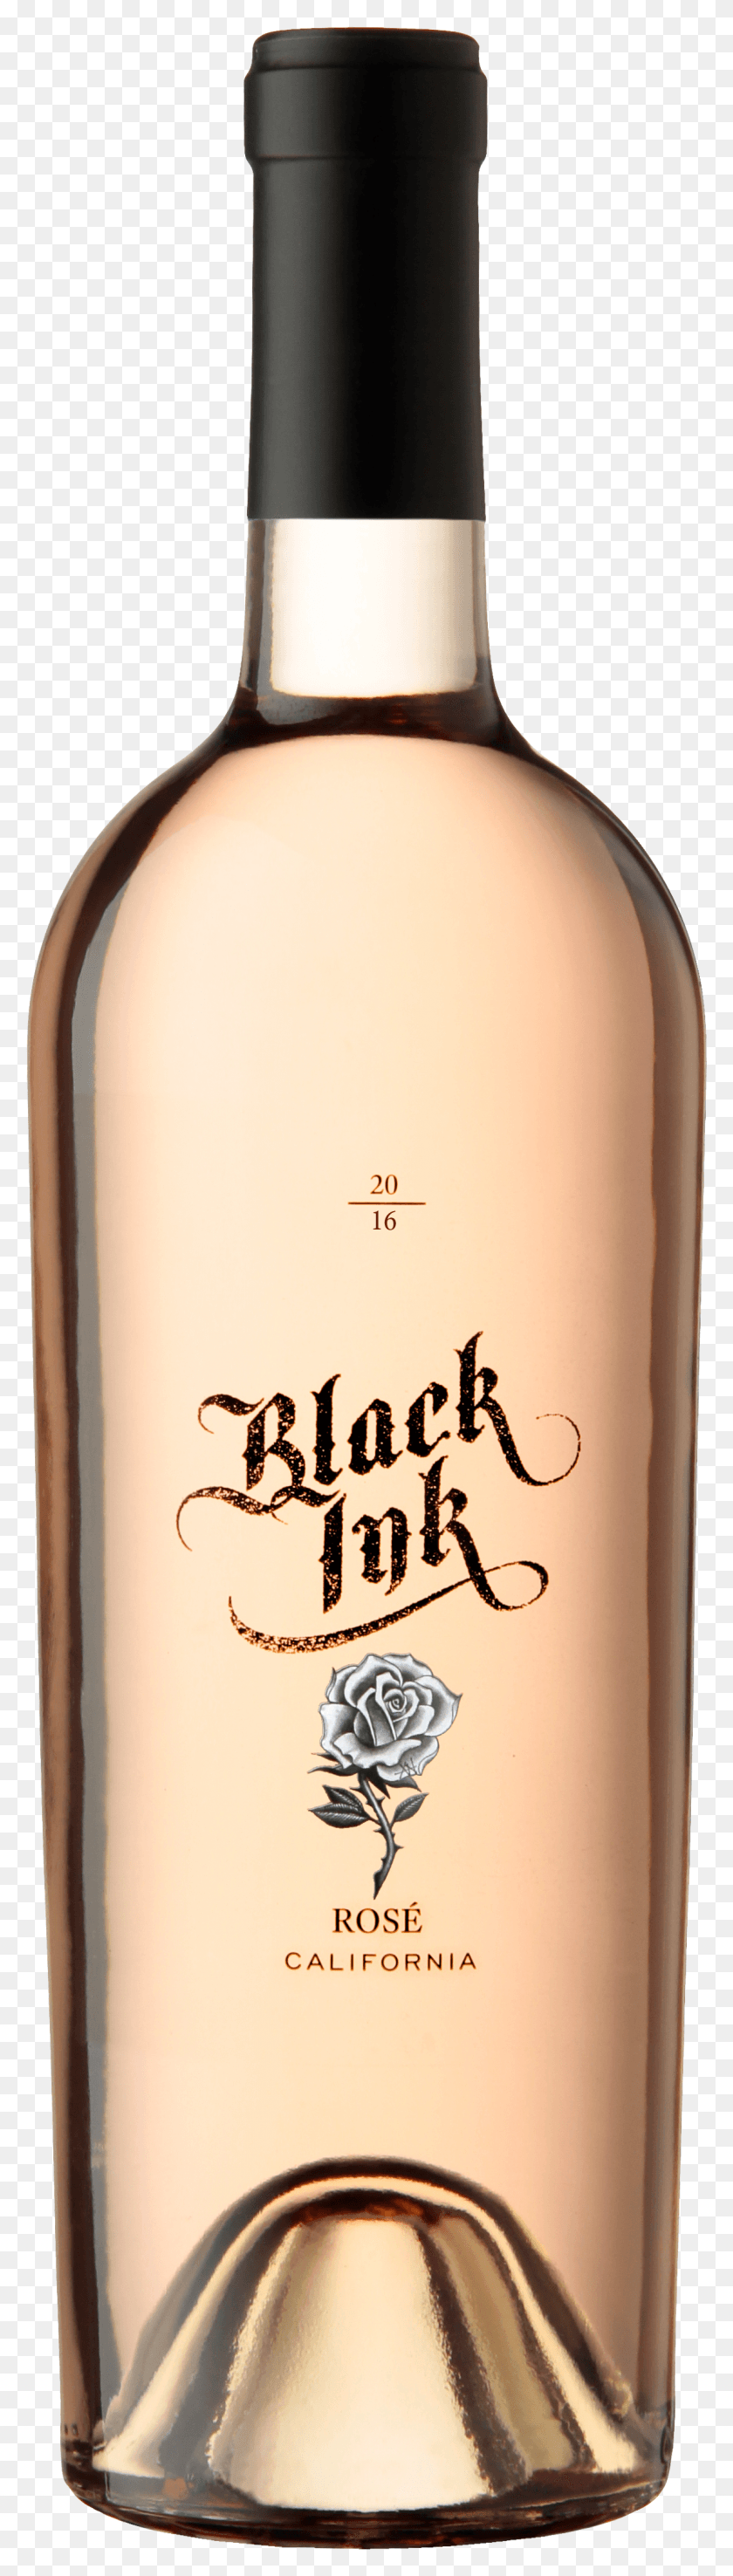 1156x4287 Материалы Для Продажи Black Ink Rose Wine Hd Png Скачать